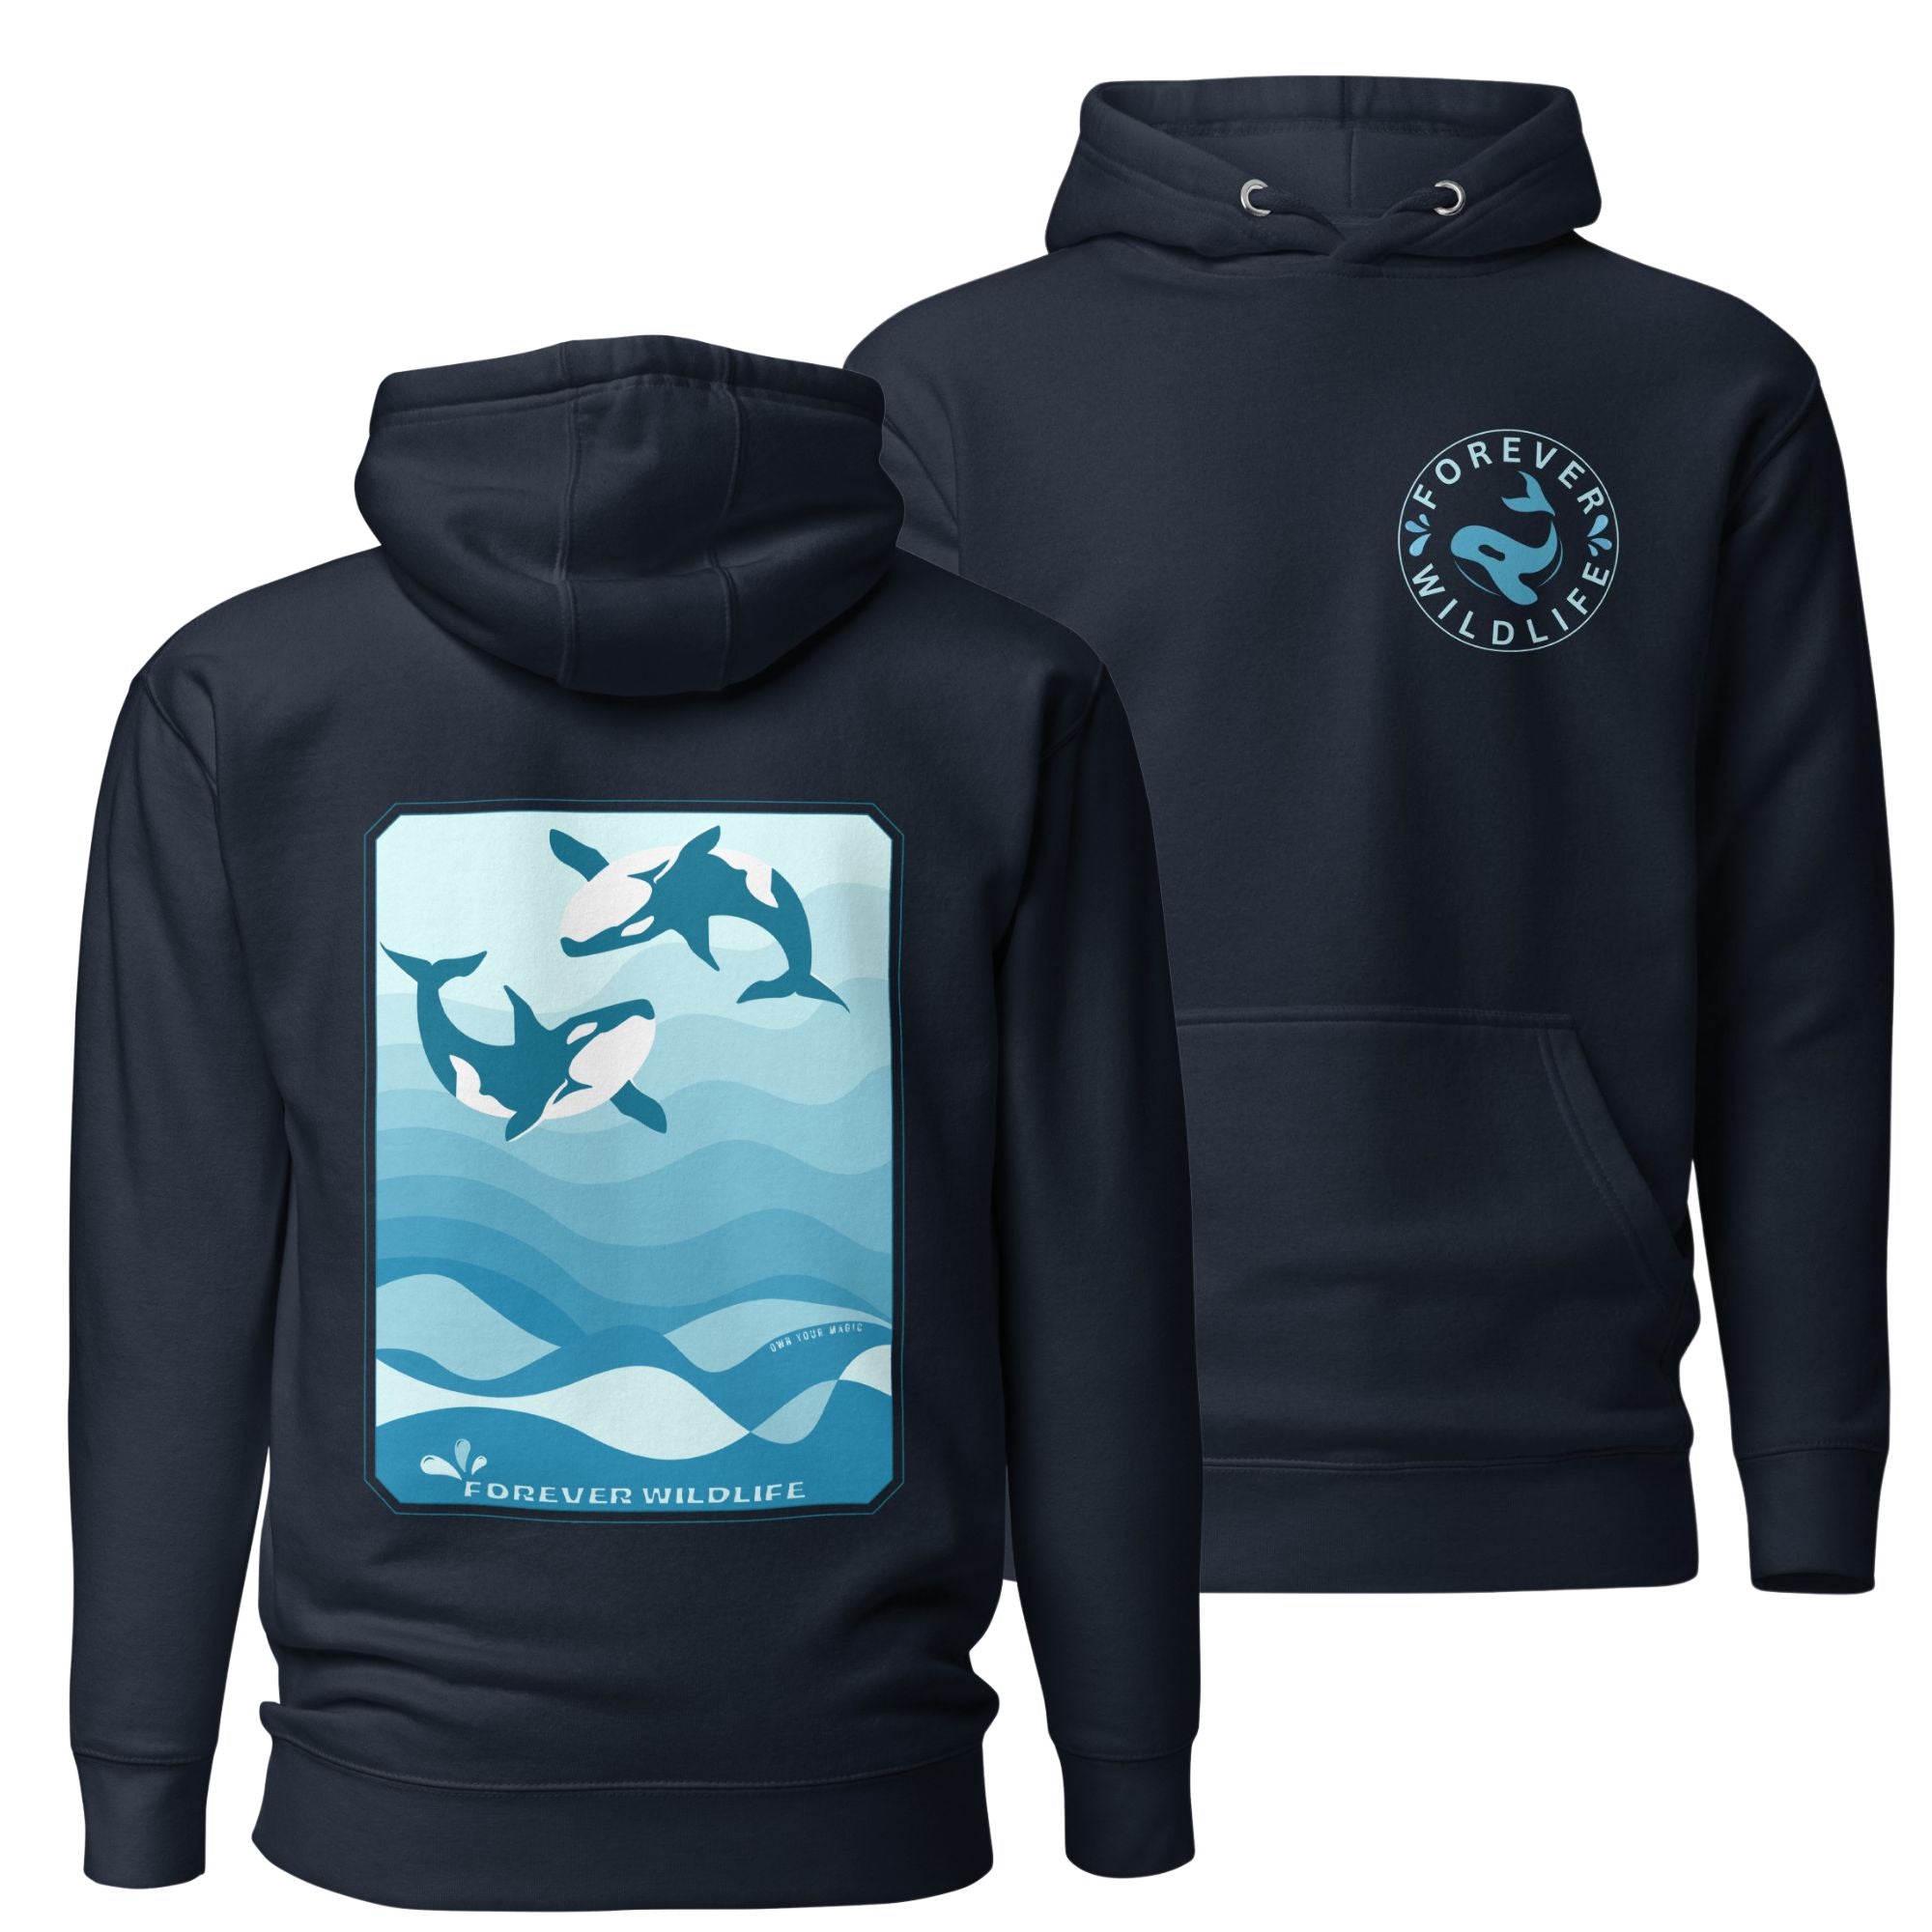 Orca Hoodie, beautiful Navy Orca hoodie with Killer Whales on the hoodie by Forever Wildlife selling Wildlife hoodies.